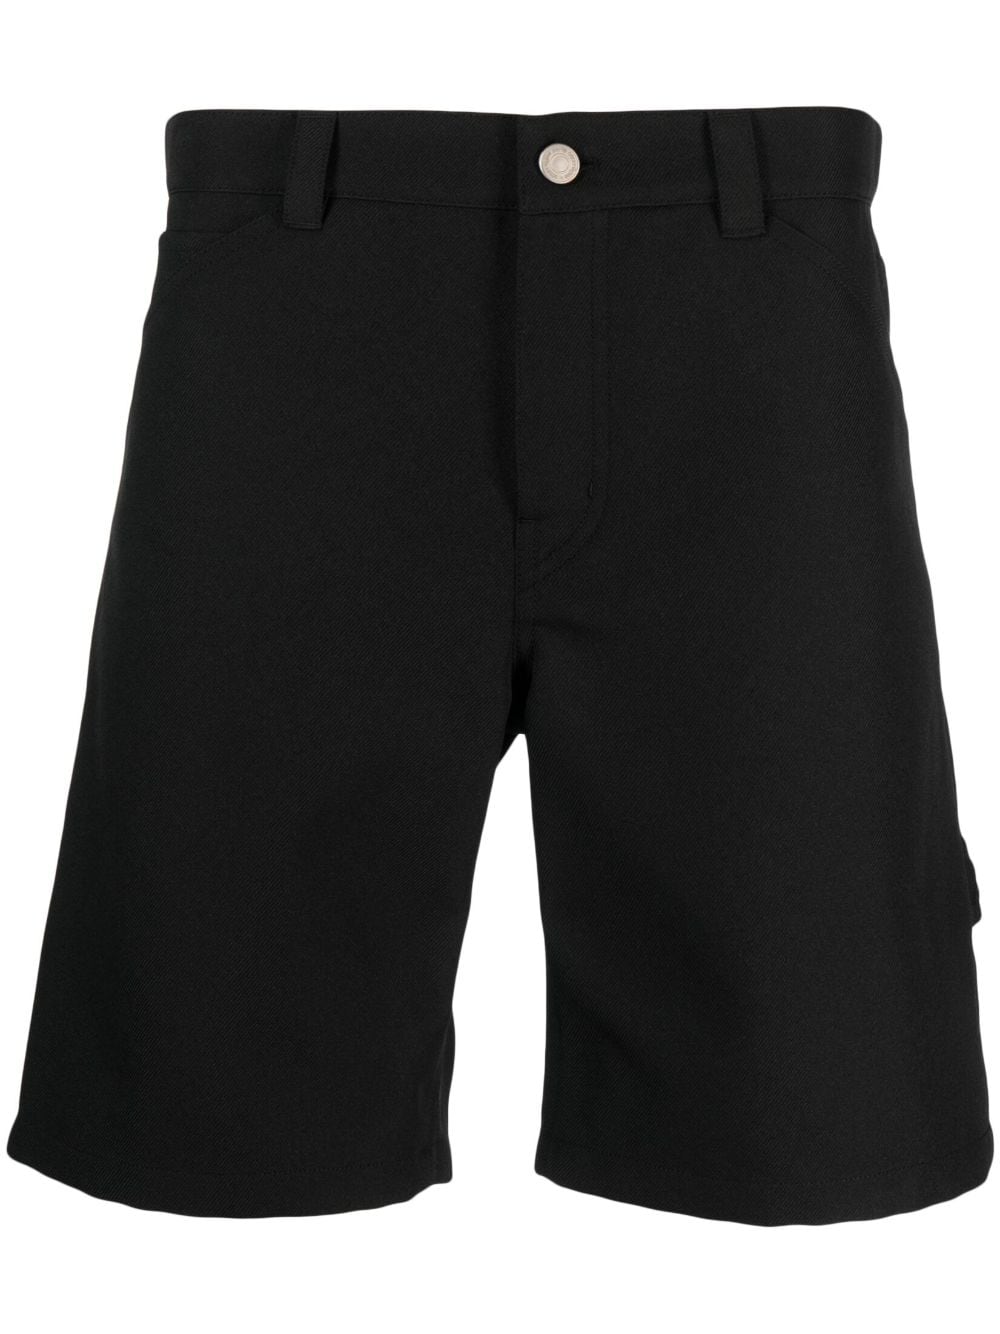 Courrèges above-knee length shorts - Black von Courrèges